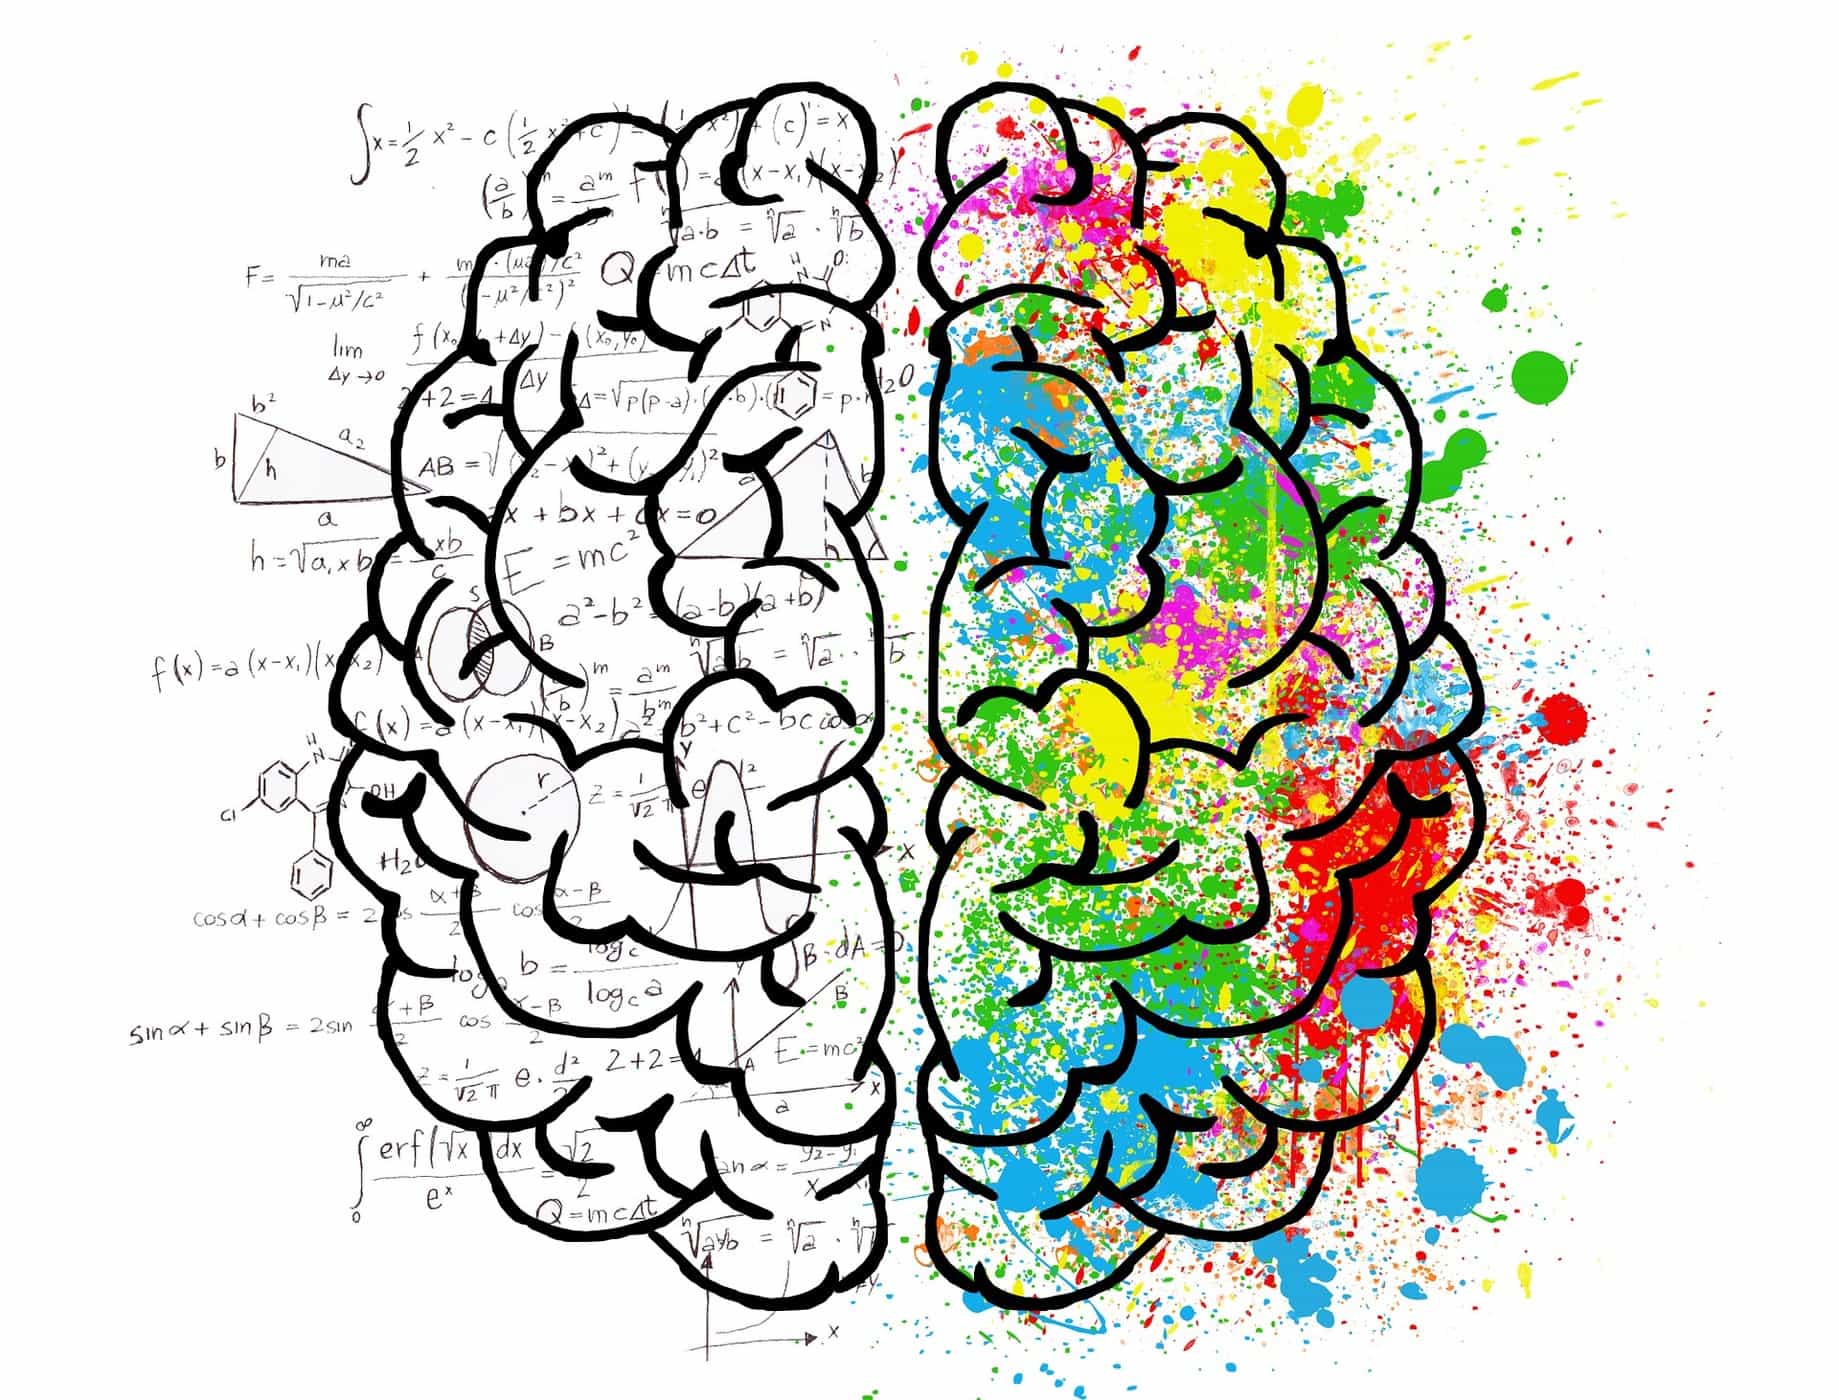 우뇌와 좌뇌의 기능이 다르다는 것이 사실입니까? 차이점은 무엇입니까?